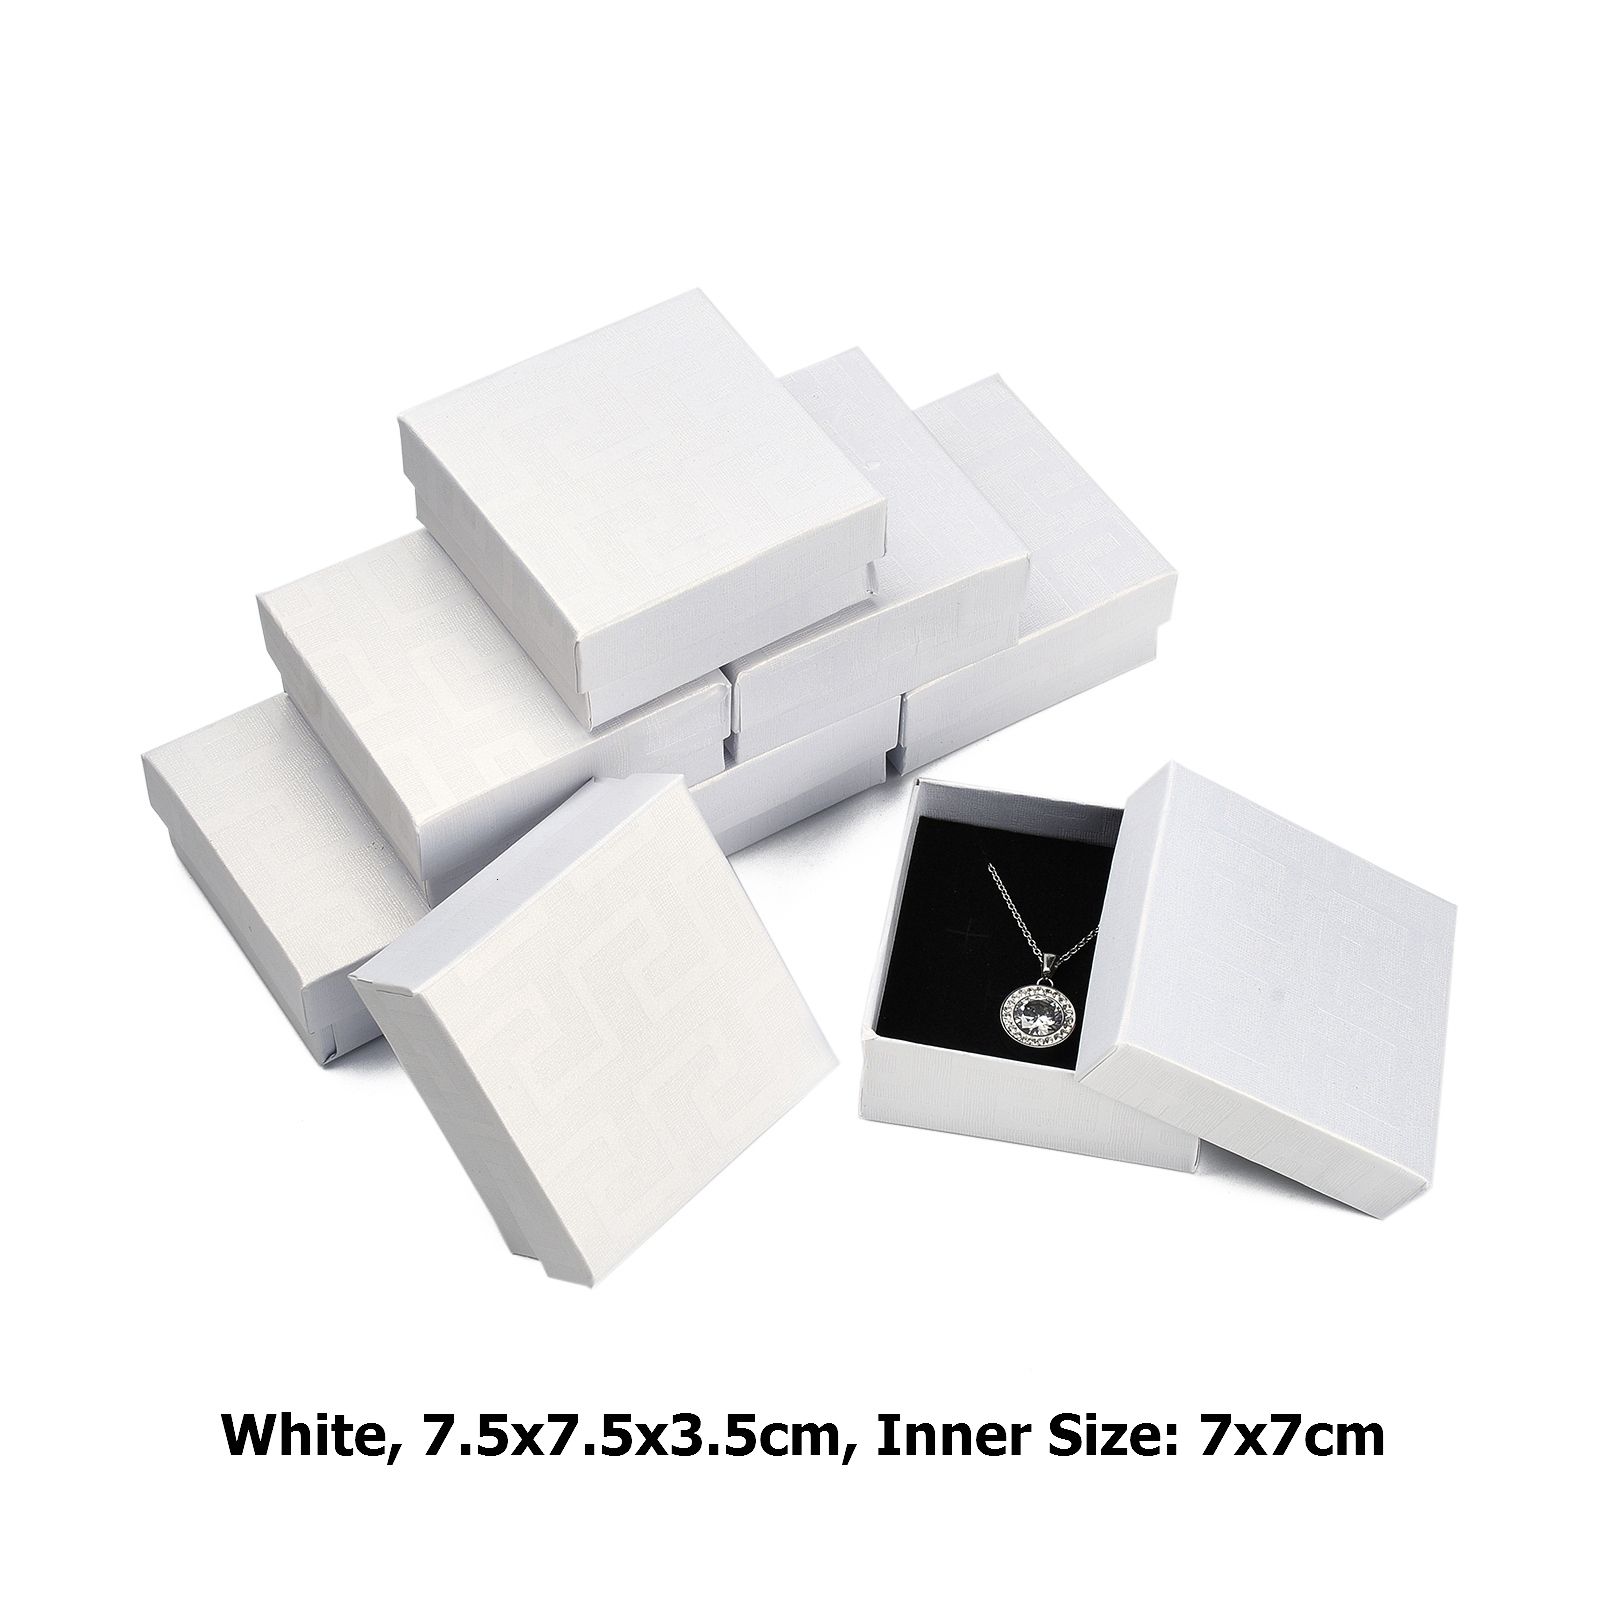 White 7.5x7.5x3.5cm